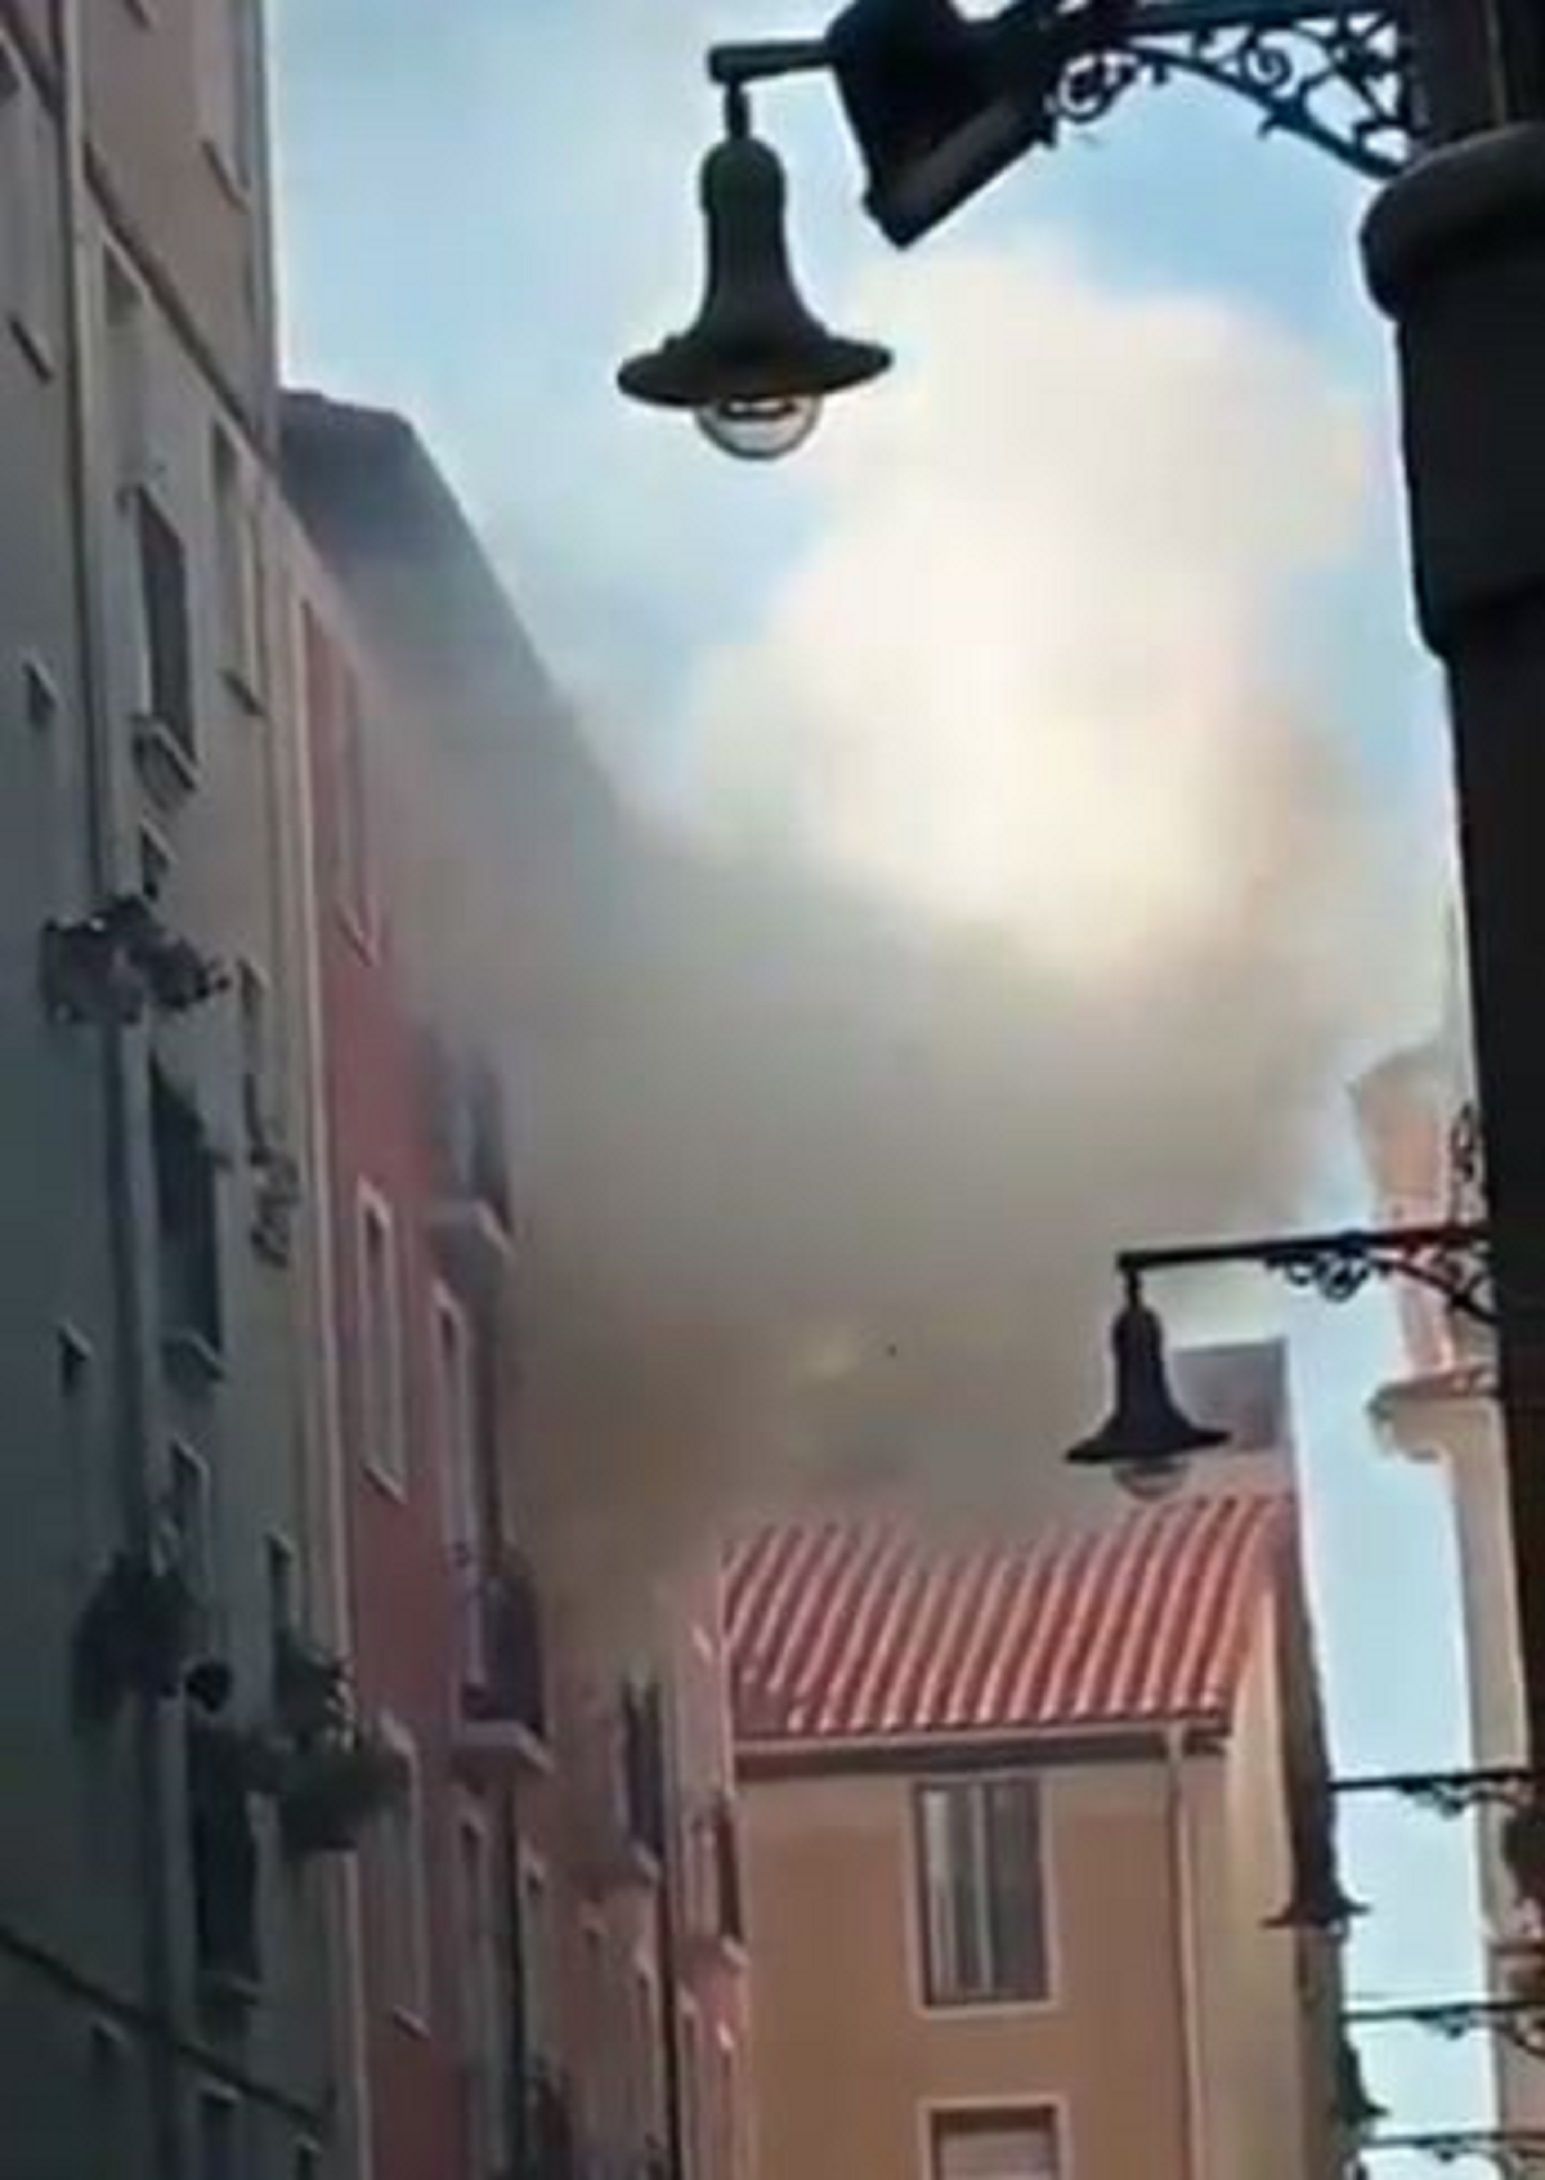 Incendio pensión Pamplona / Twitter